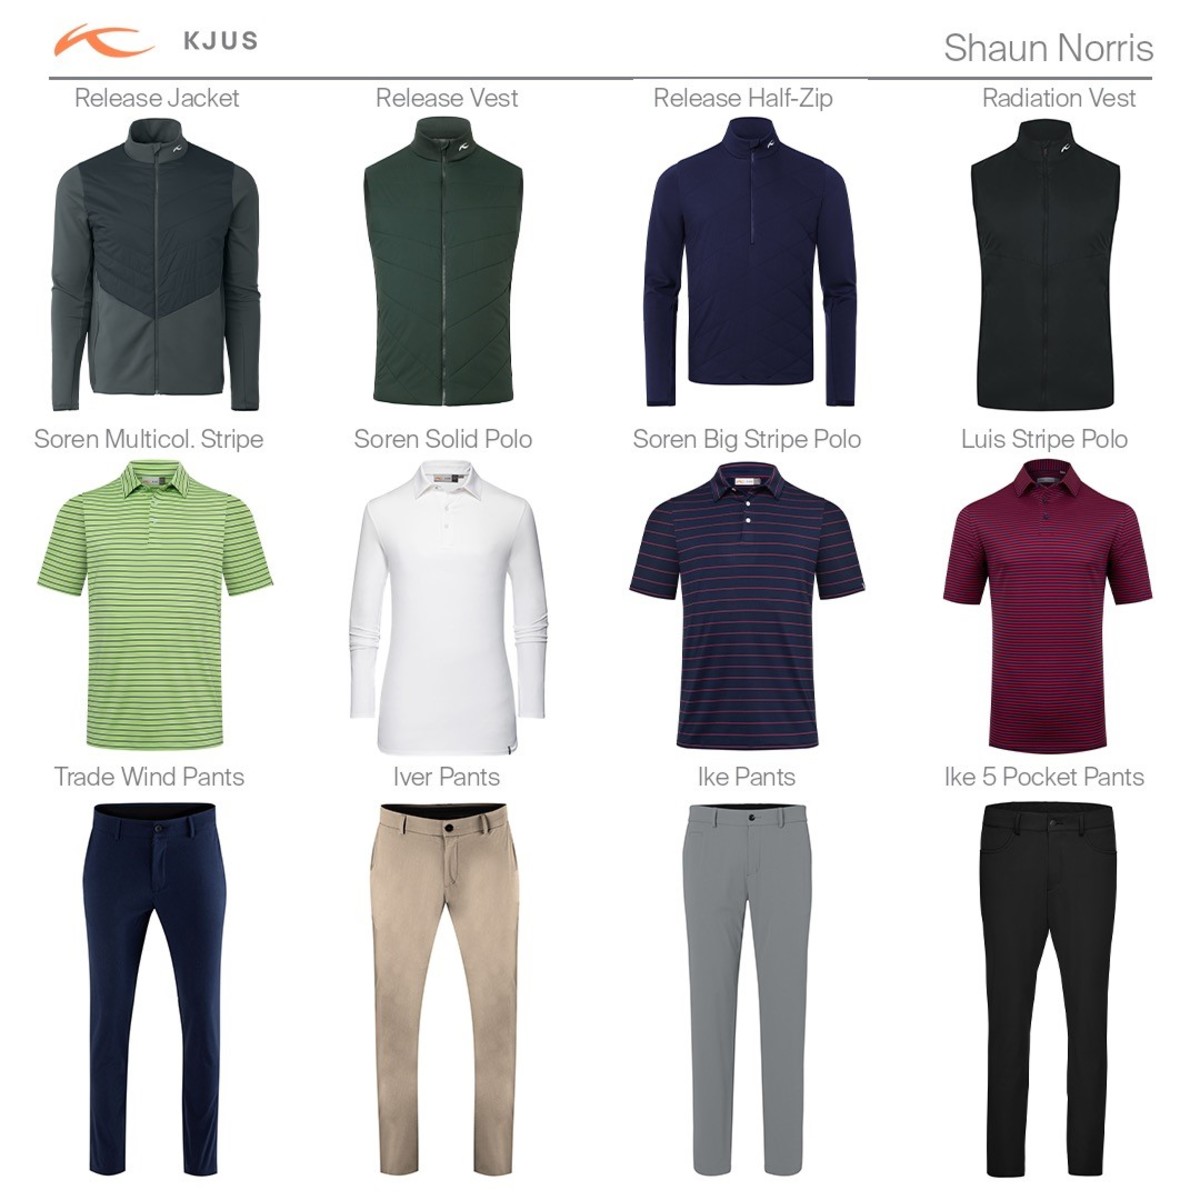 KJUS-Athlete-Outfits-Shaun Norris